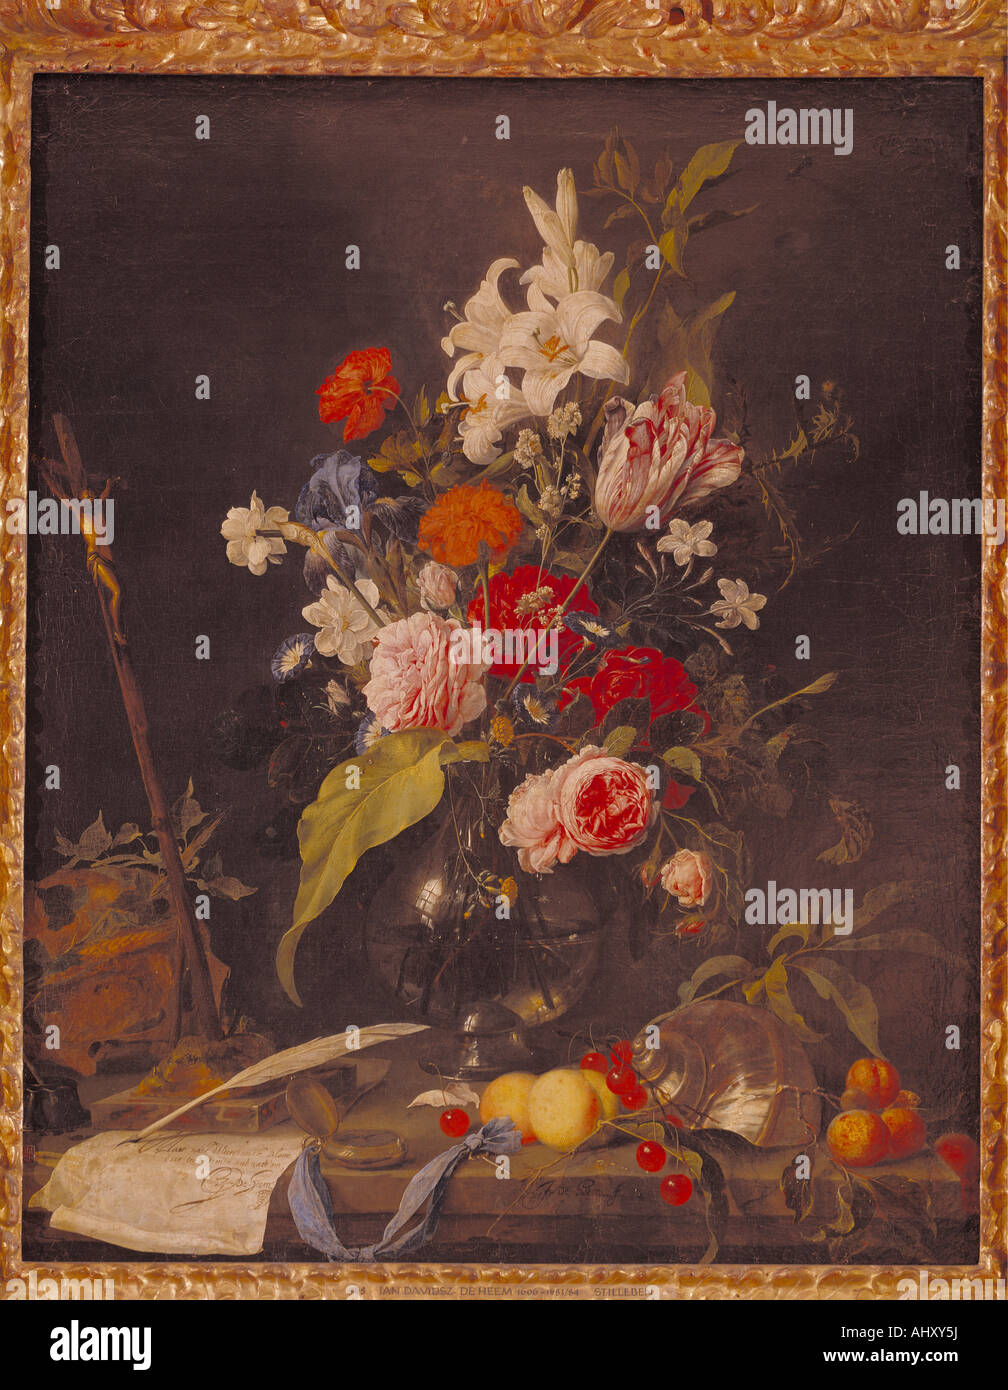 'Fine Arts, Heem, Jan Davidsz de, (1606 - 1684), peinture, 'fleur nature morte au crâne et crucifix', vers 1630, huile sur pouvez Banque D'Images